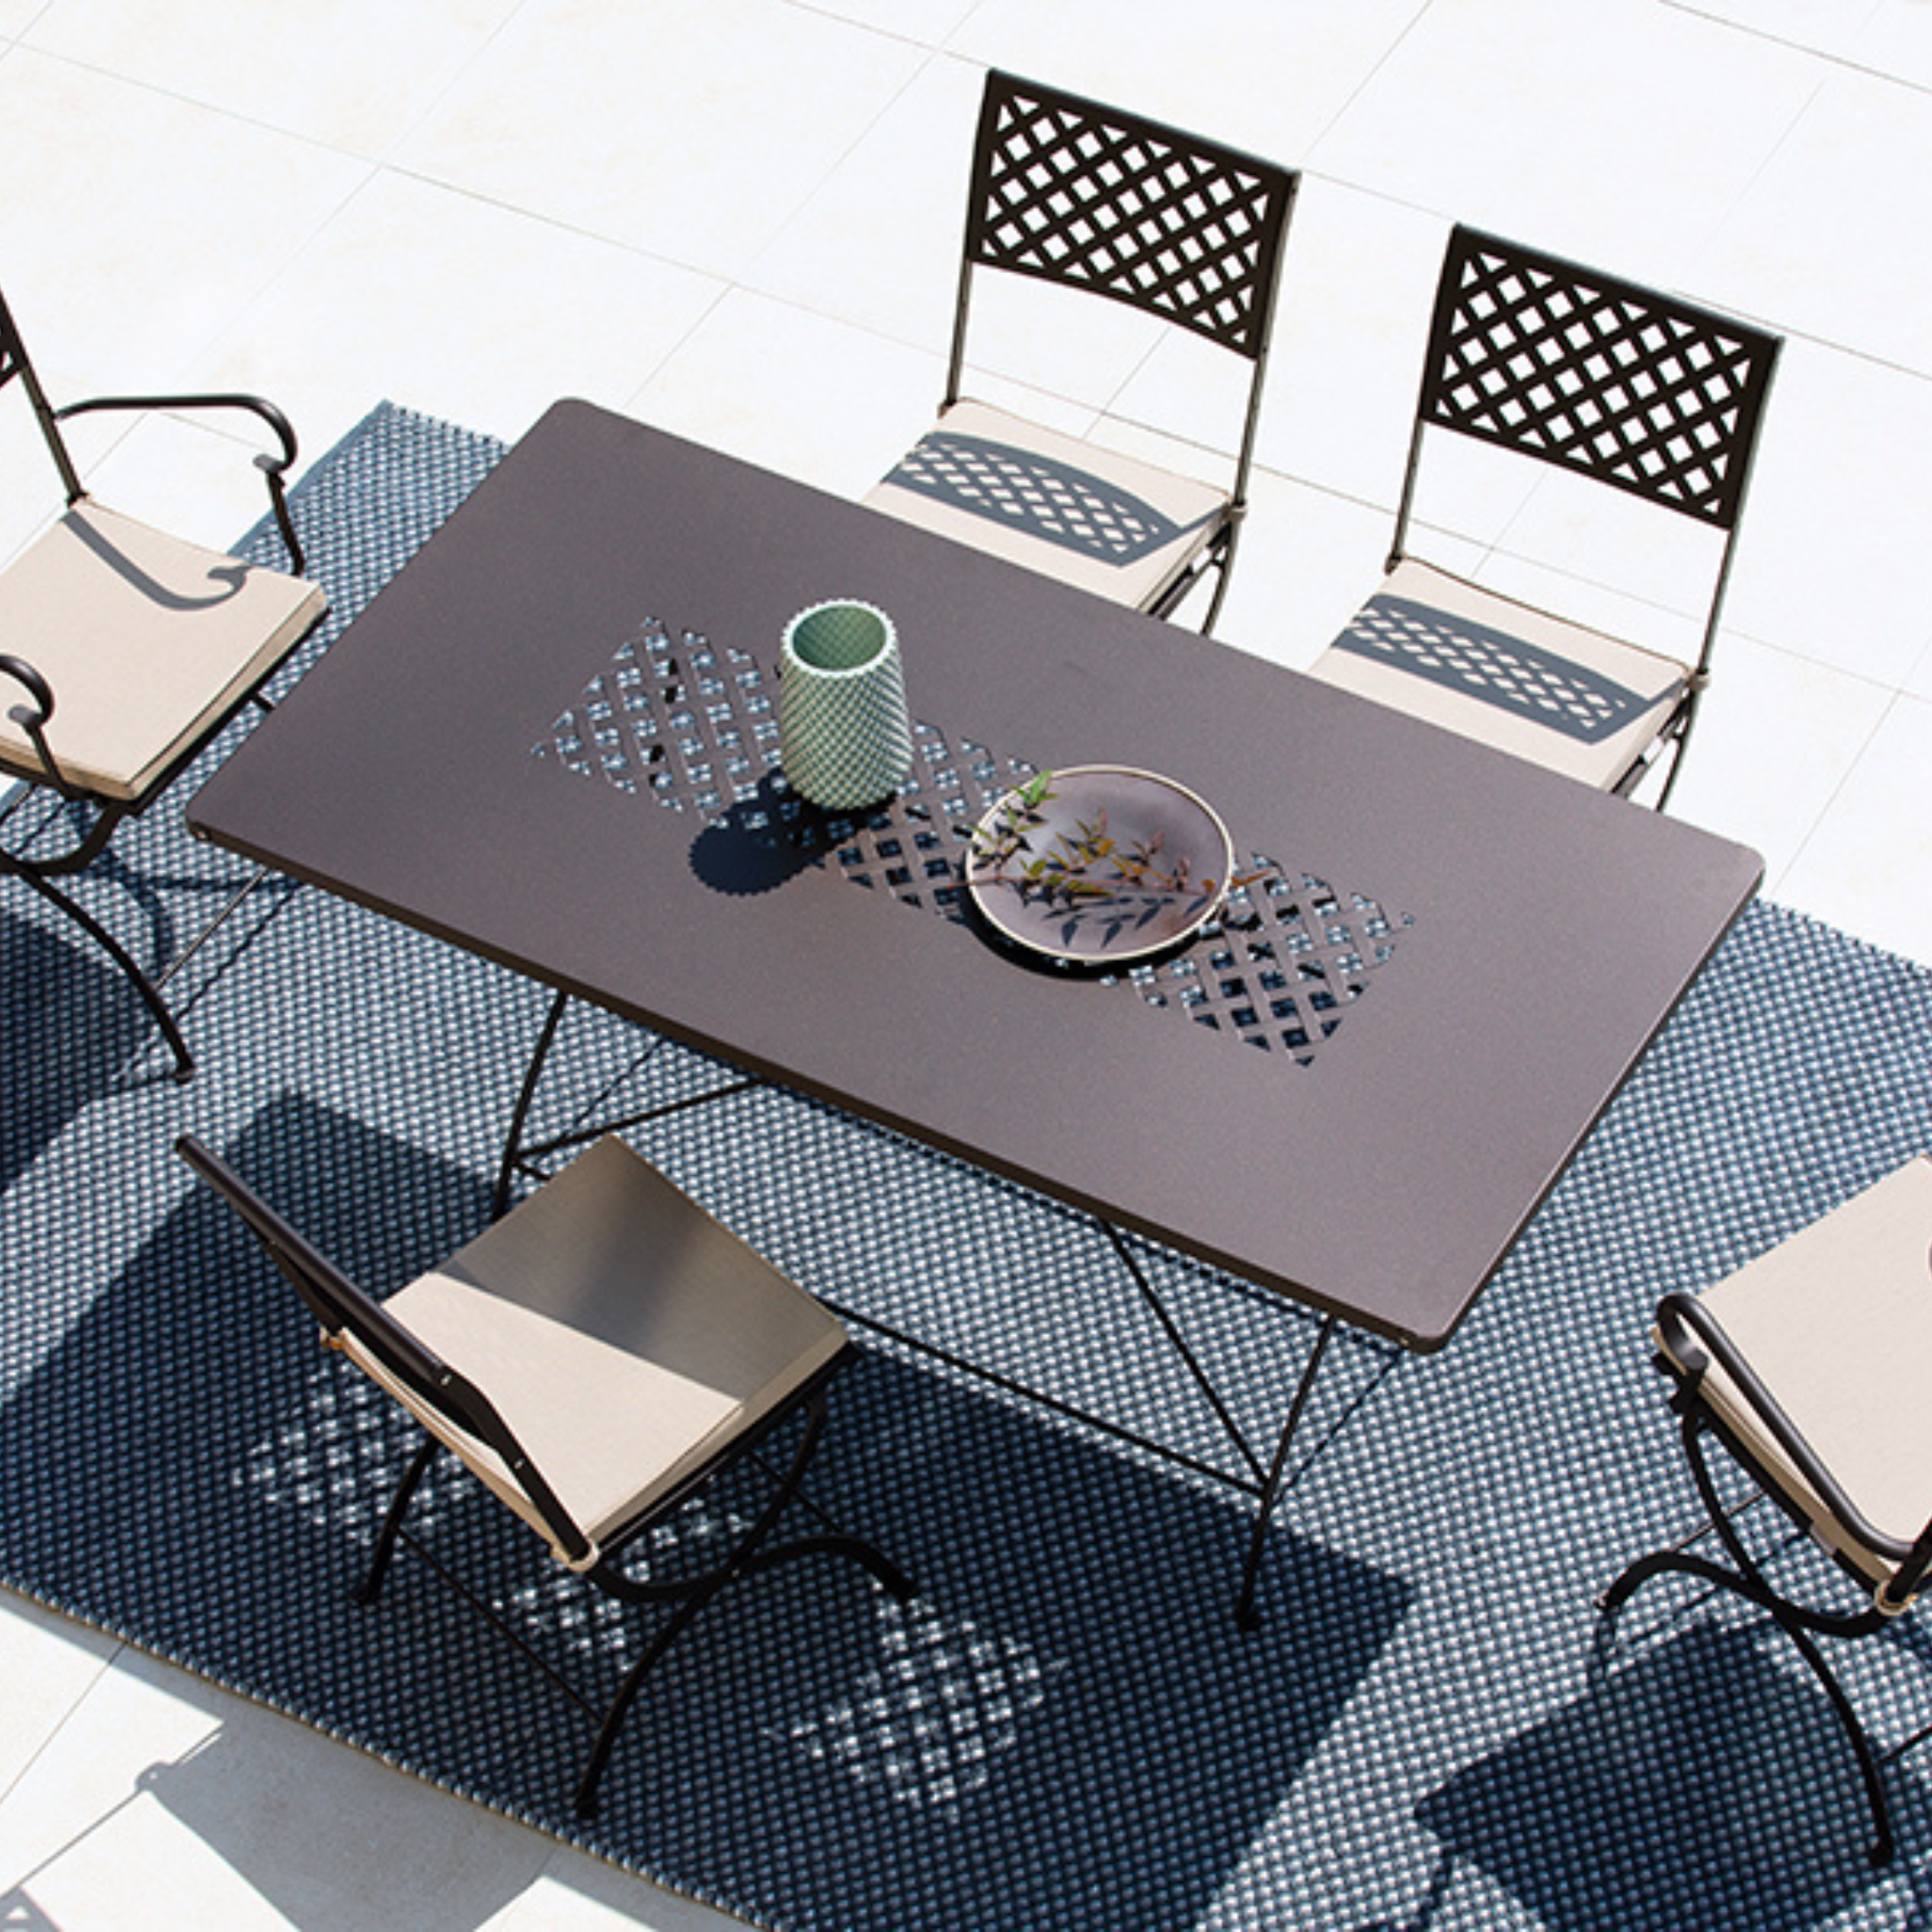 Table pliante "Printemps" en métal galvanisé pour jardin h 75 cm